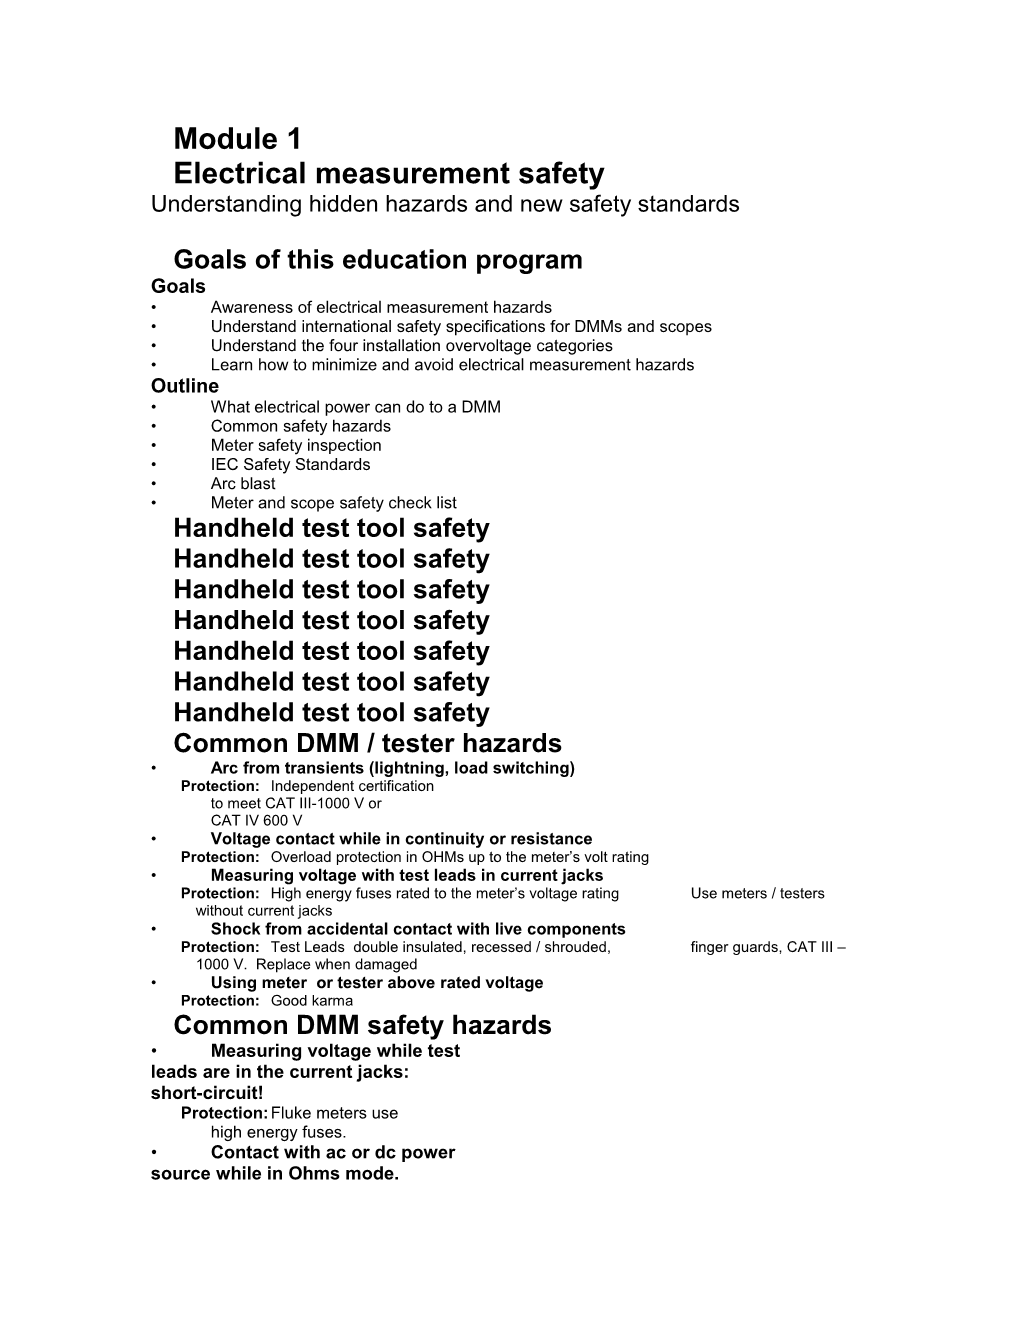 Understanding Hidden Hazards and New Safety Standards